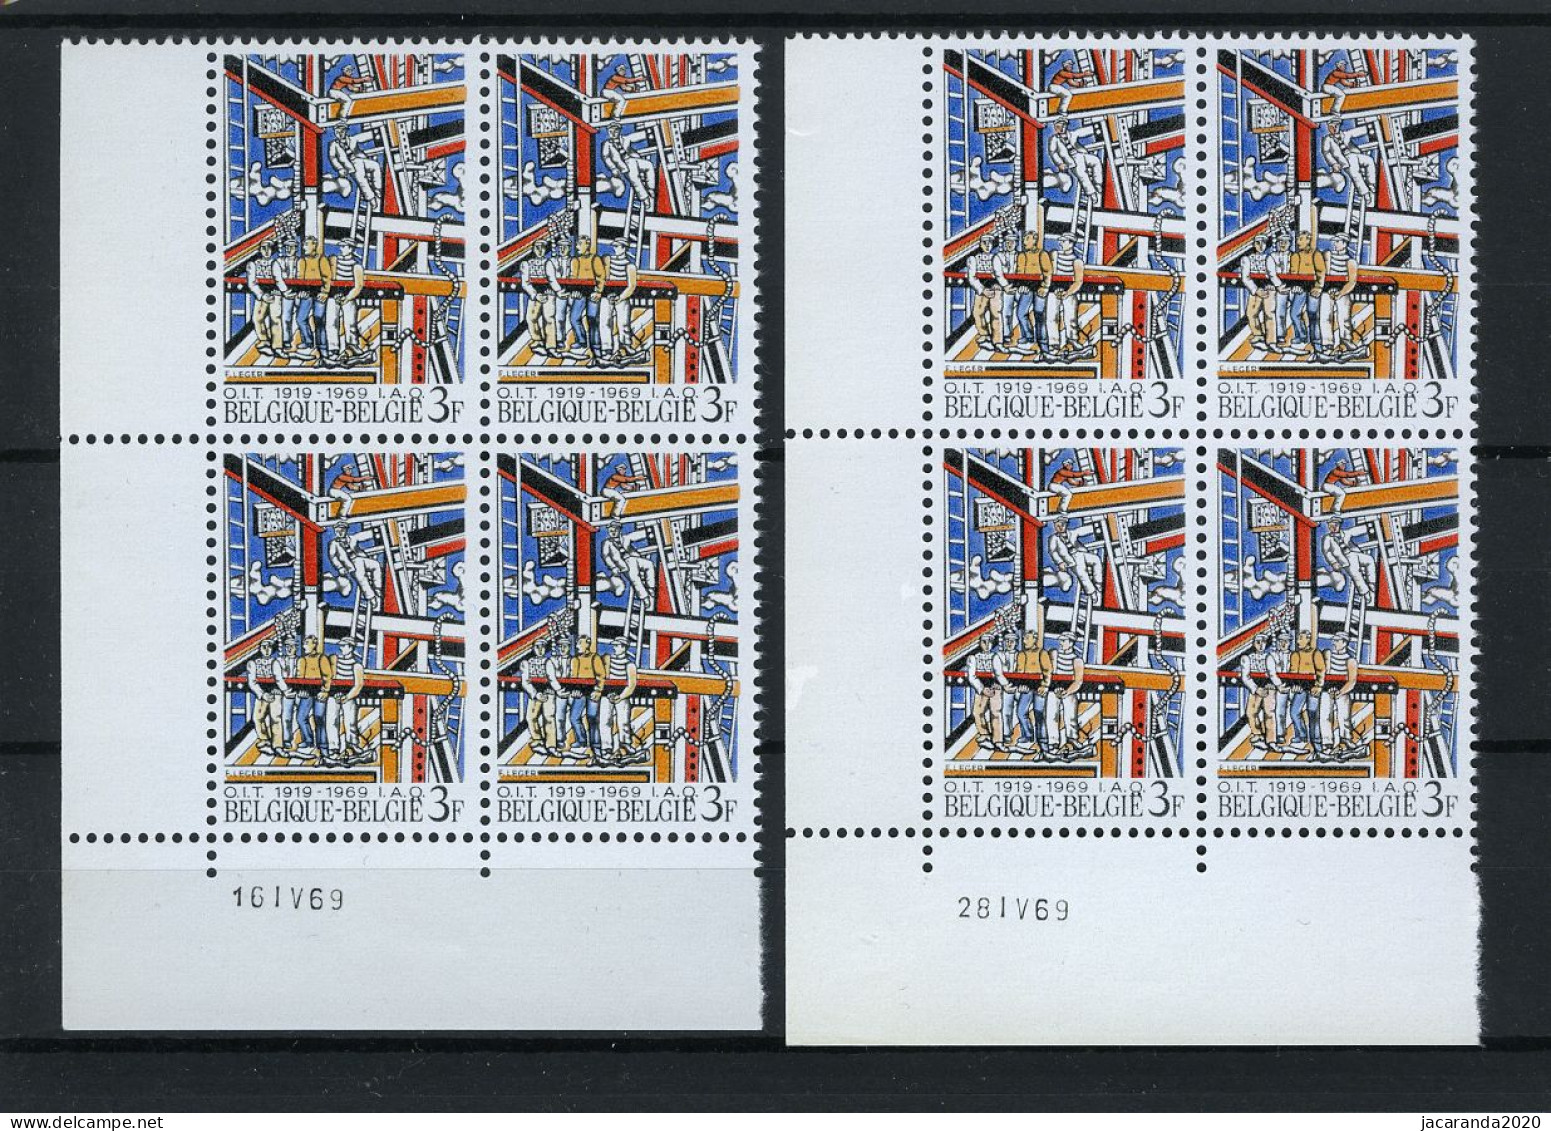 België 1497 - 50 Jaar I.A.O. - Fernand Léger - 16 IV 69 En 28 IV 69 - Dated Corners